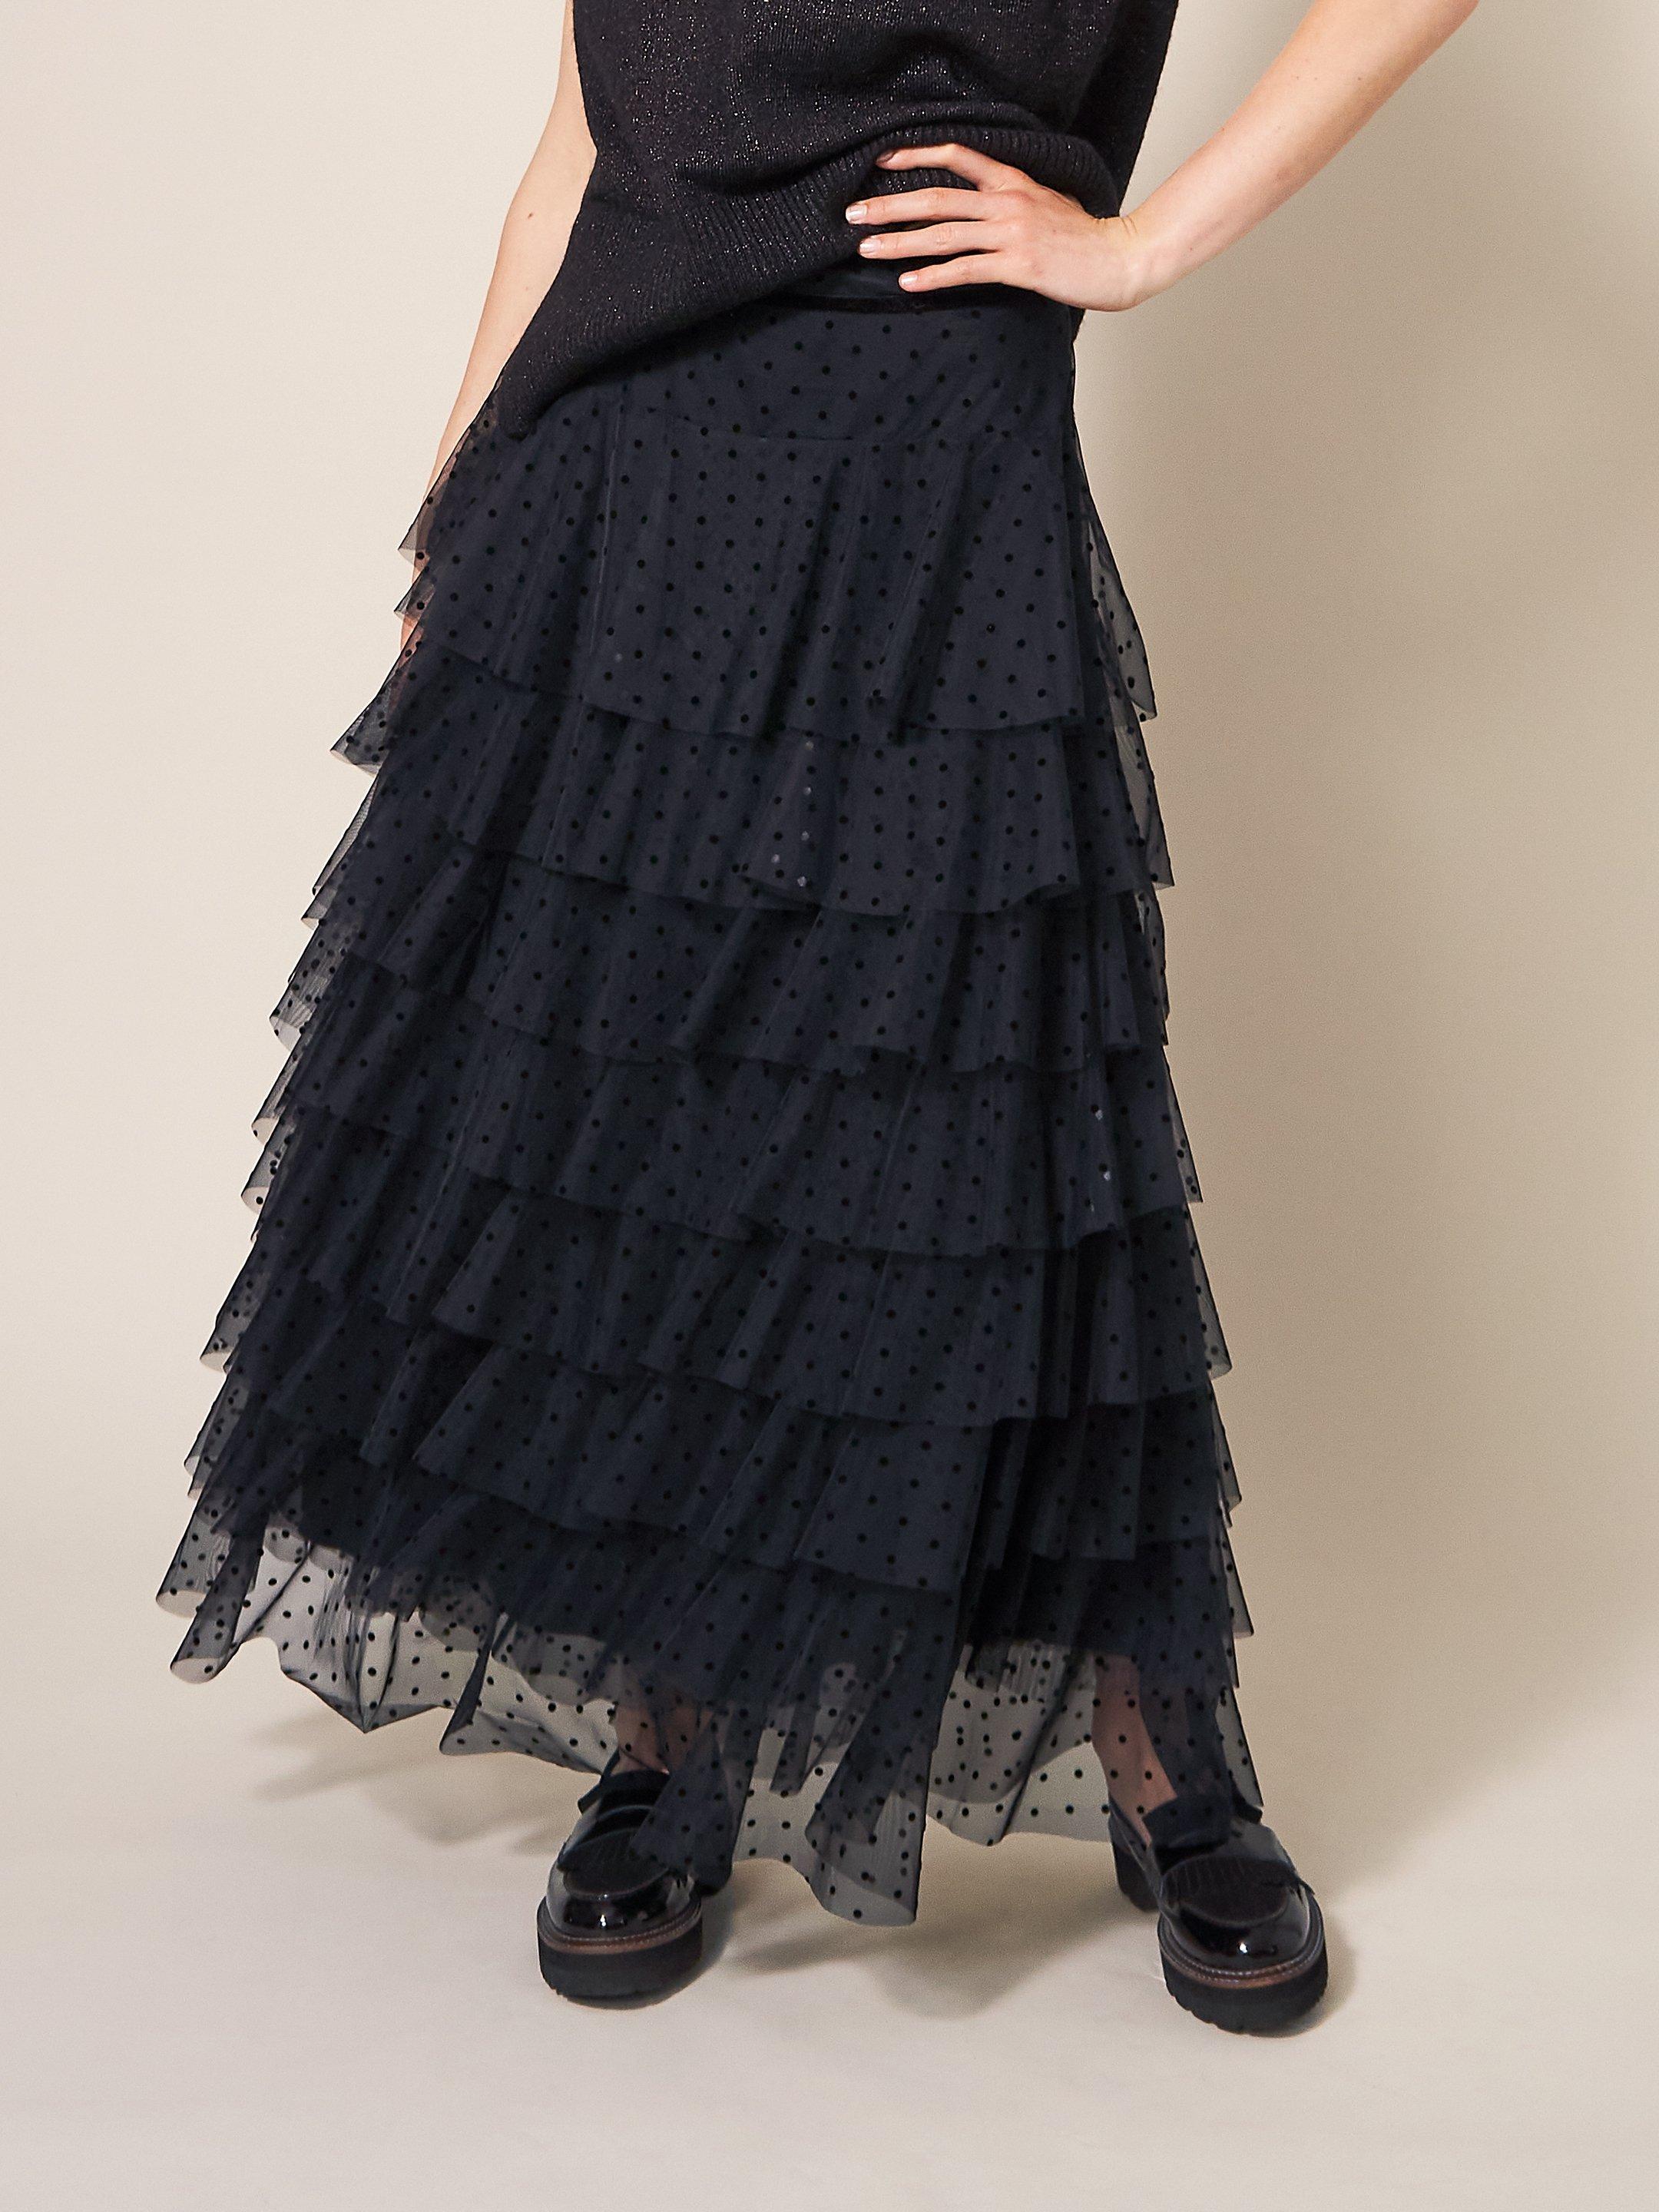 Rowan Spot Tulle Skirt in PURE BLK - MODEL DETAIL